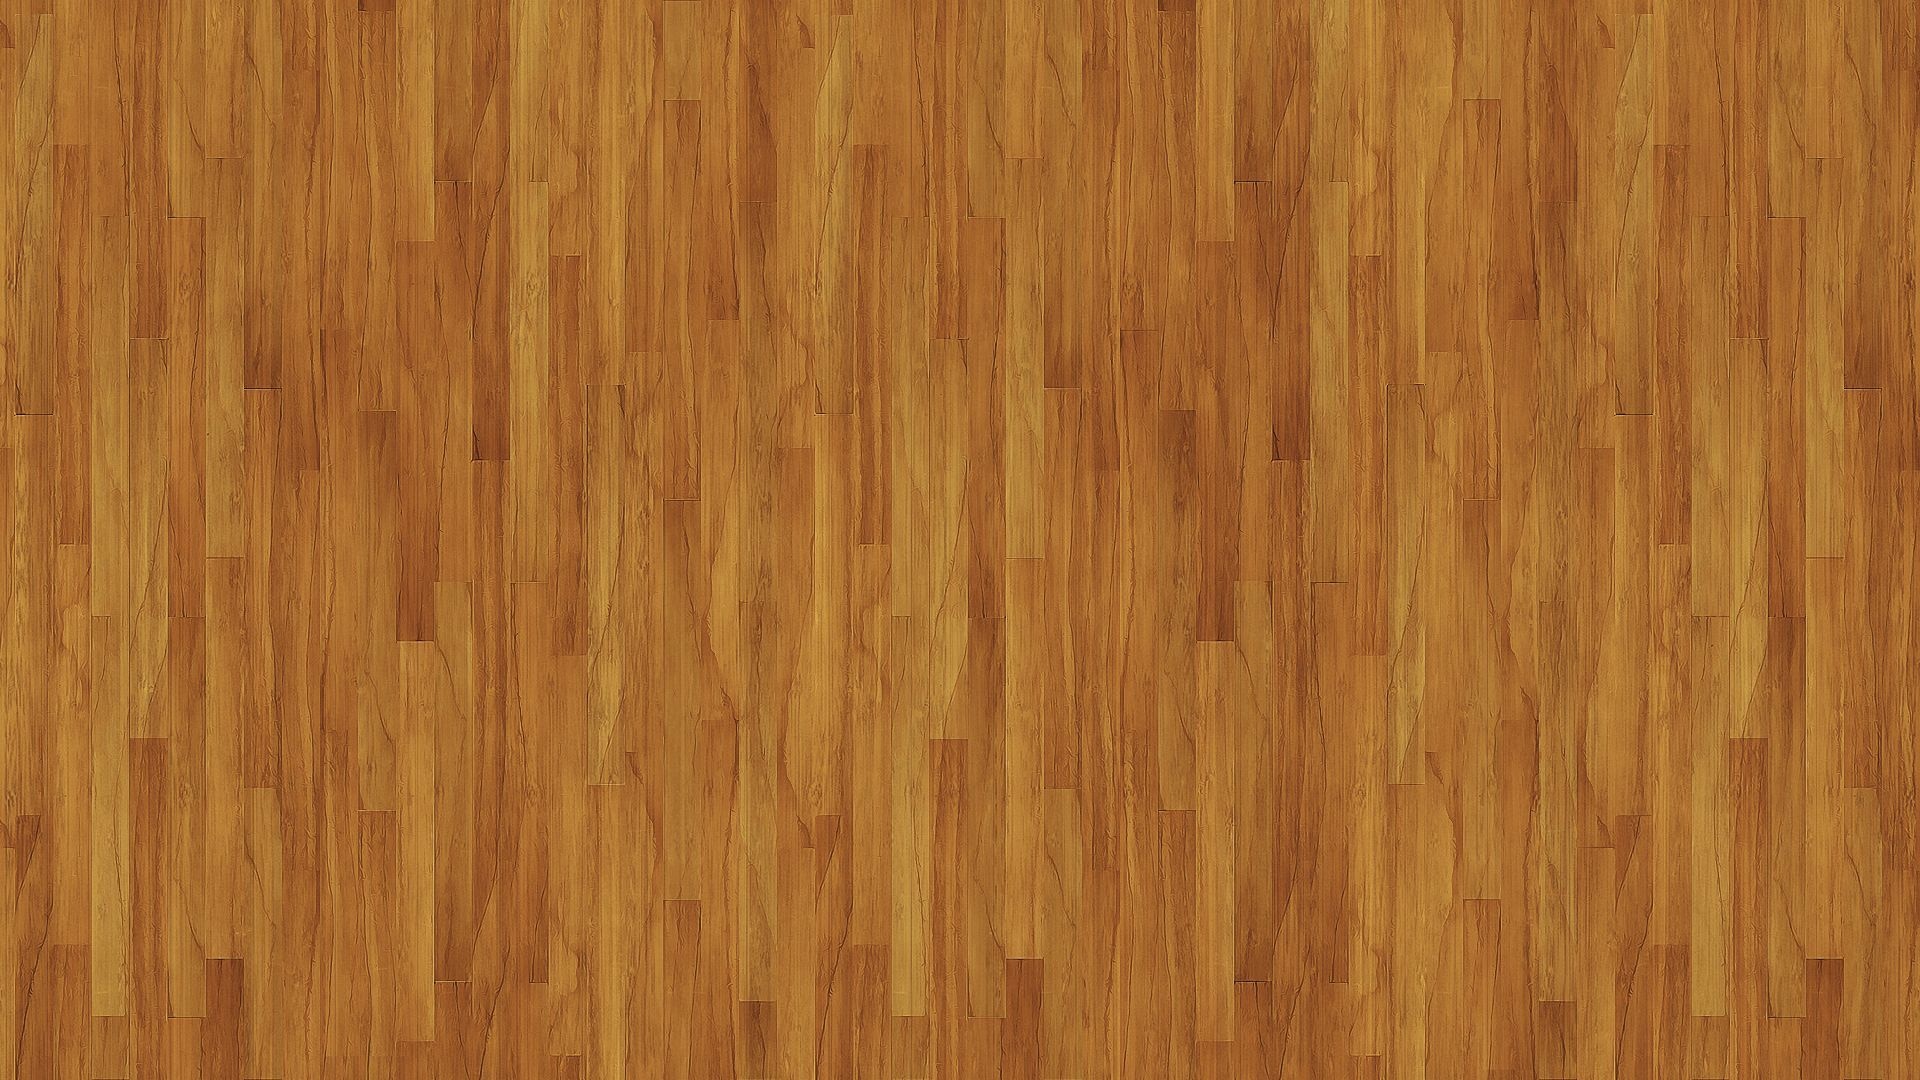 Hardwood Floor, Wood floor texture, Home interior, Flooring inspiration, 1920x1080 Full HD Desktop